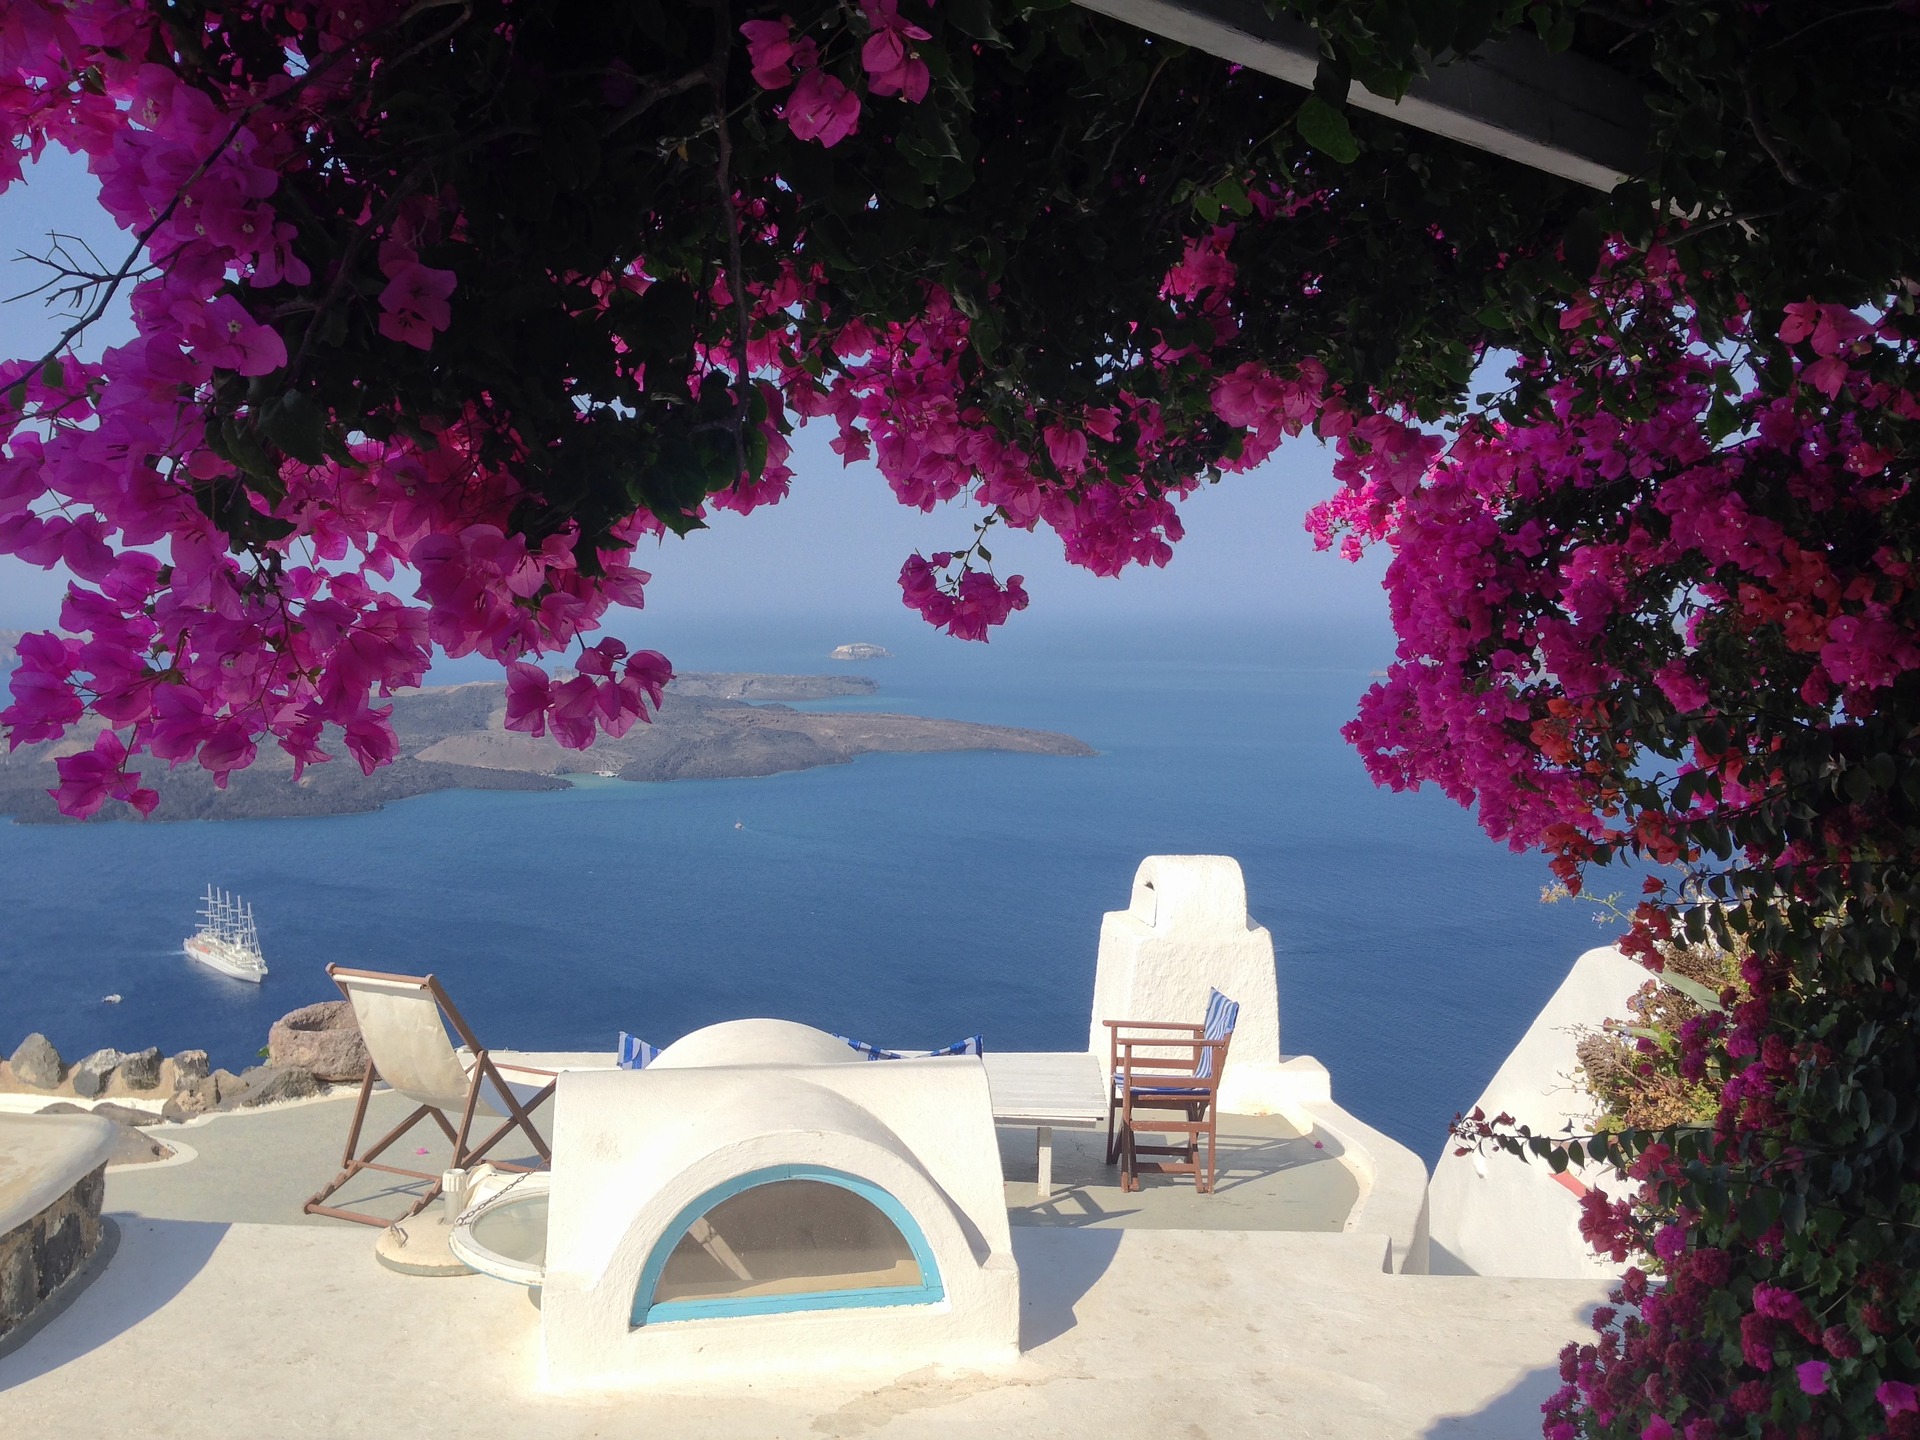 Séjourner à Santorin : choisir un hôtel, une location ou un appart’hôtel ?